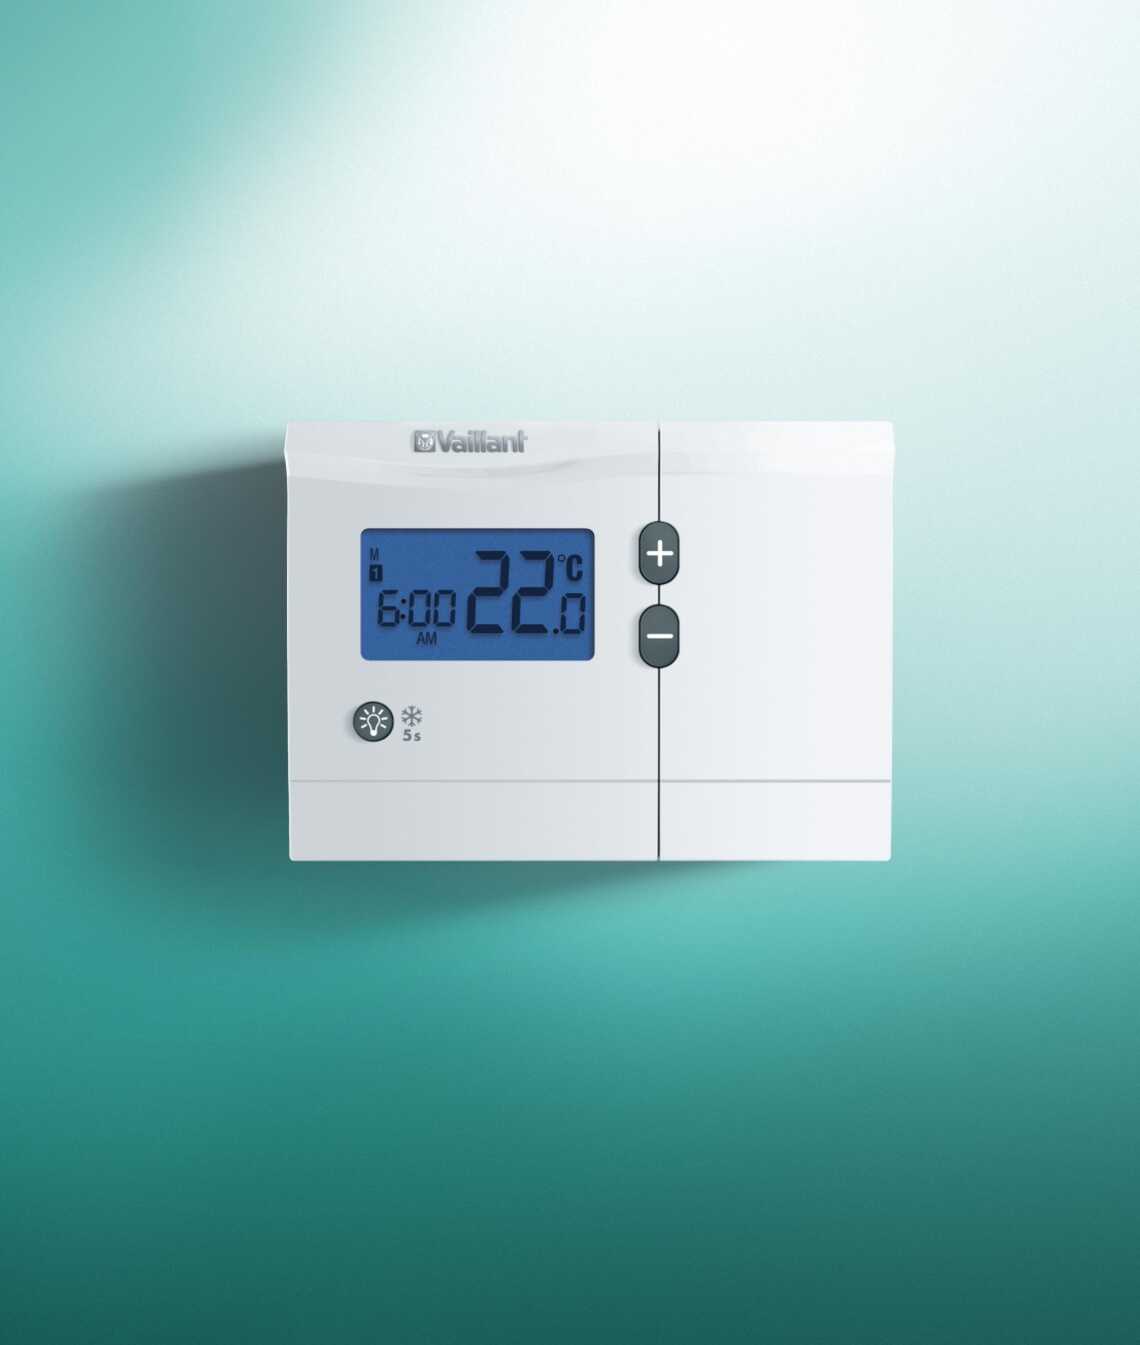 Comment voulez-vous brancher un thermostat Honeywell